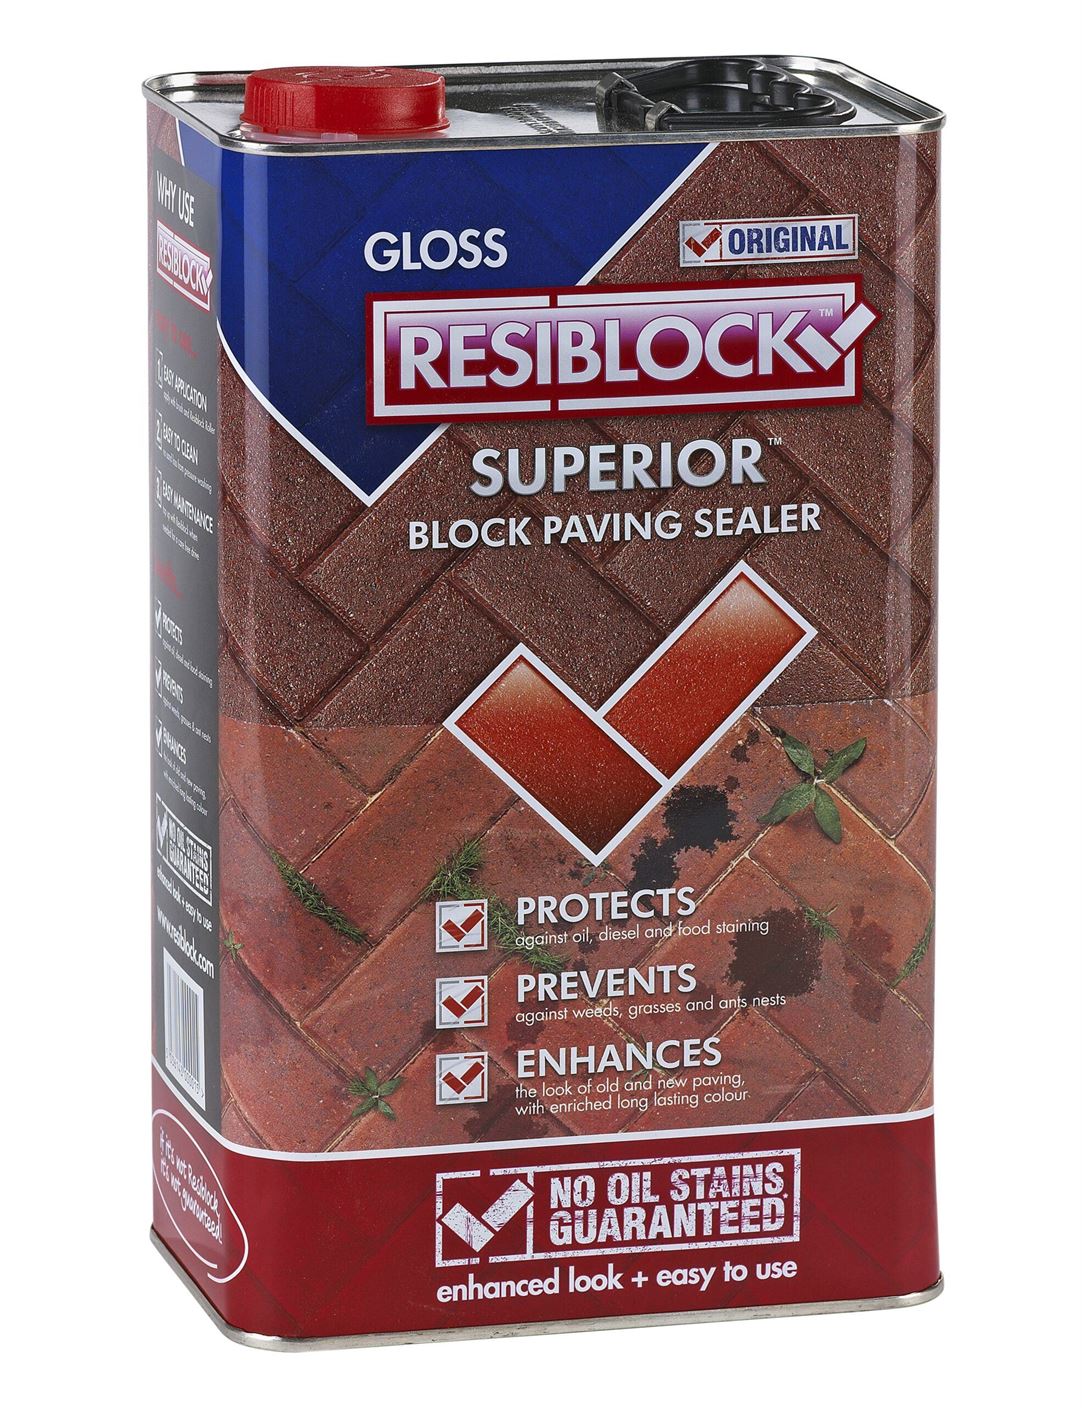 Resiblock Superior Original - Block Paving Sealer (Gloss) 25L